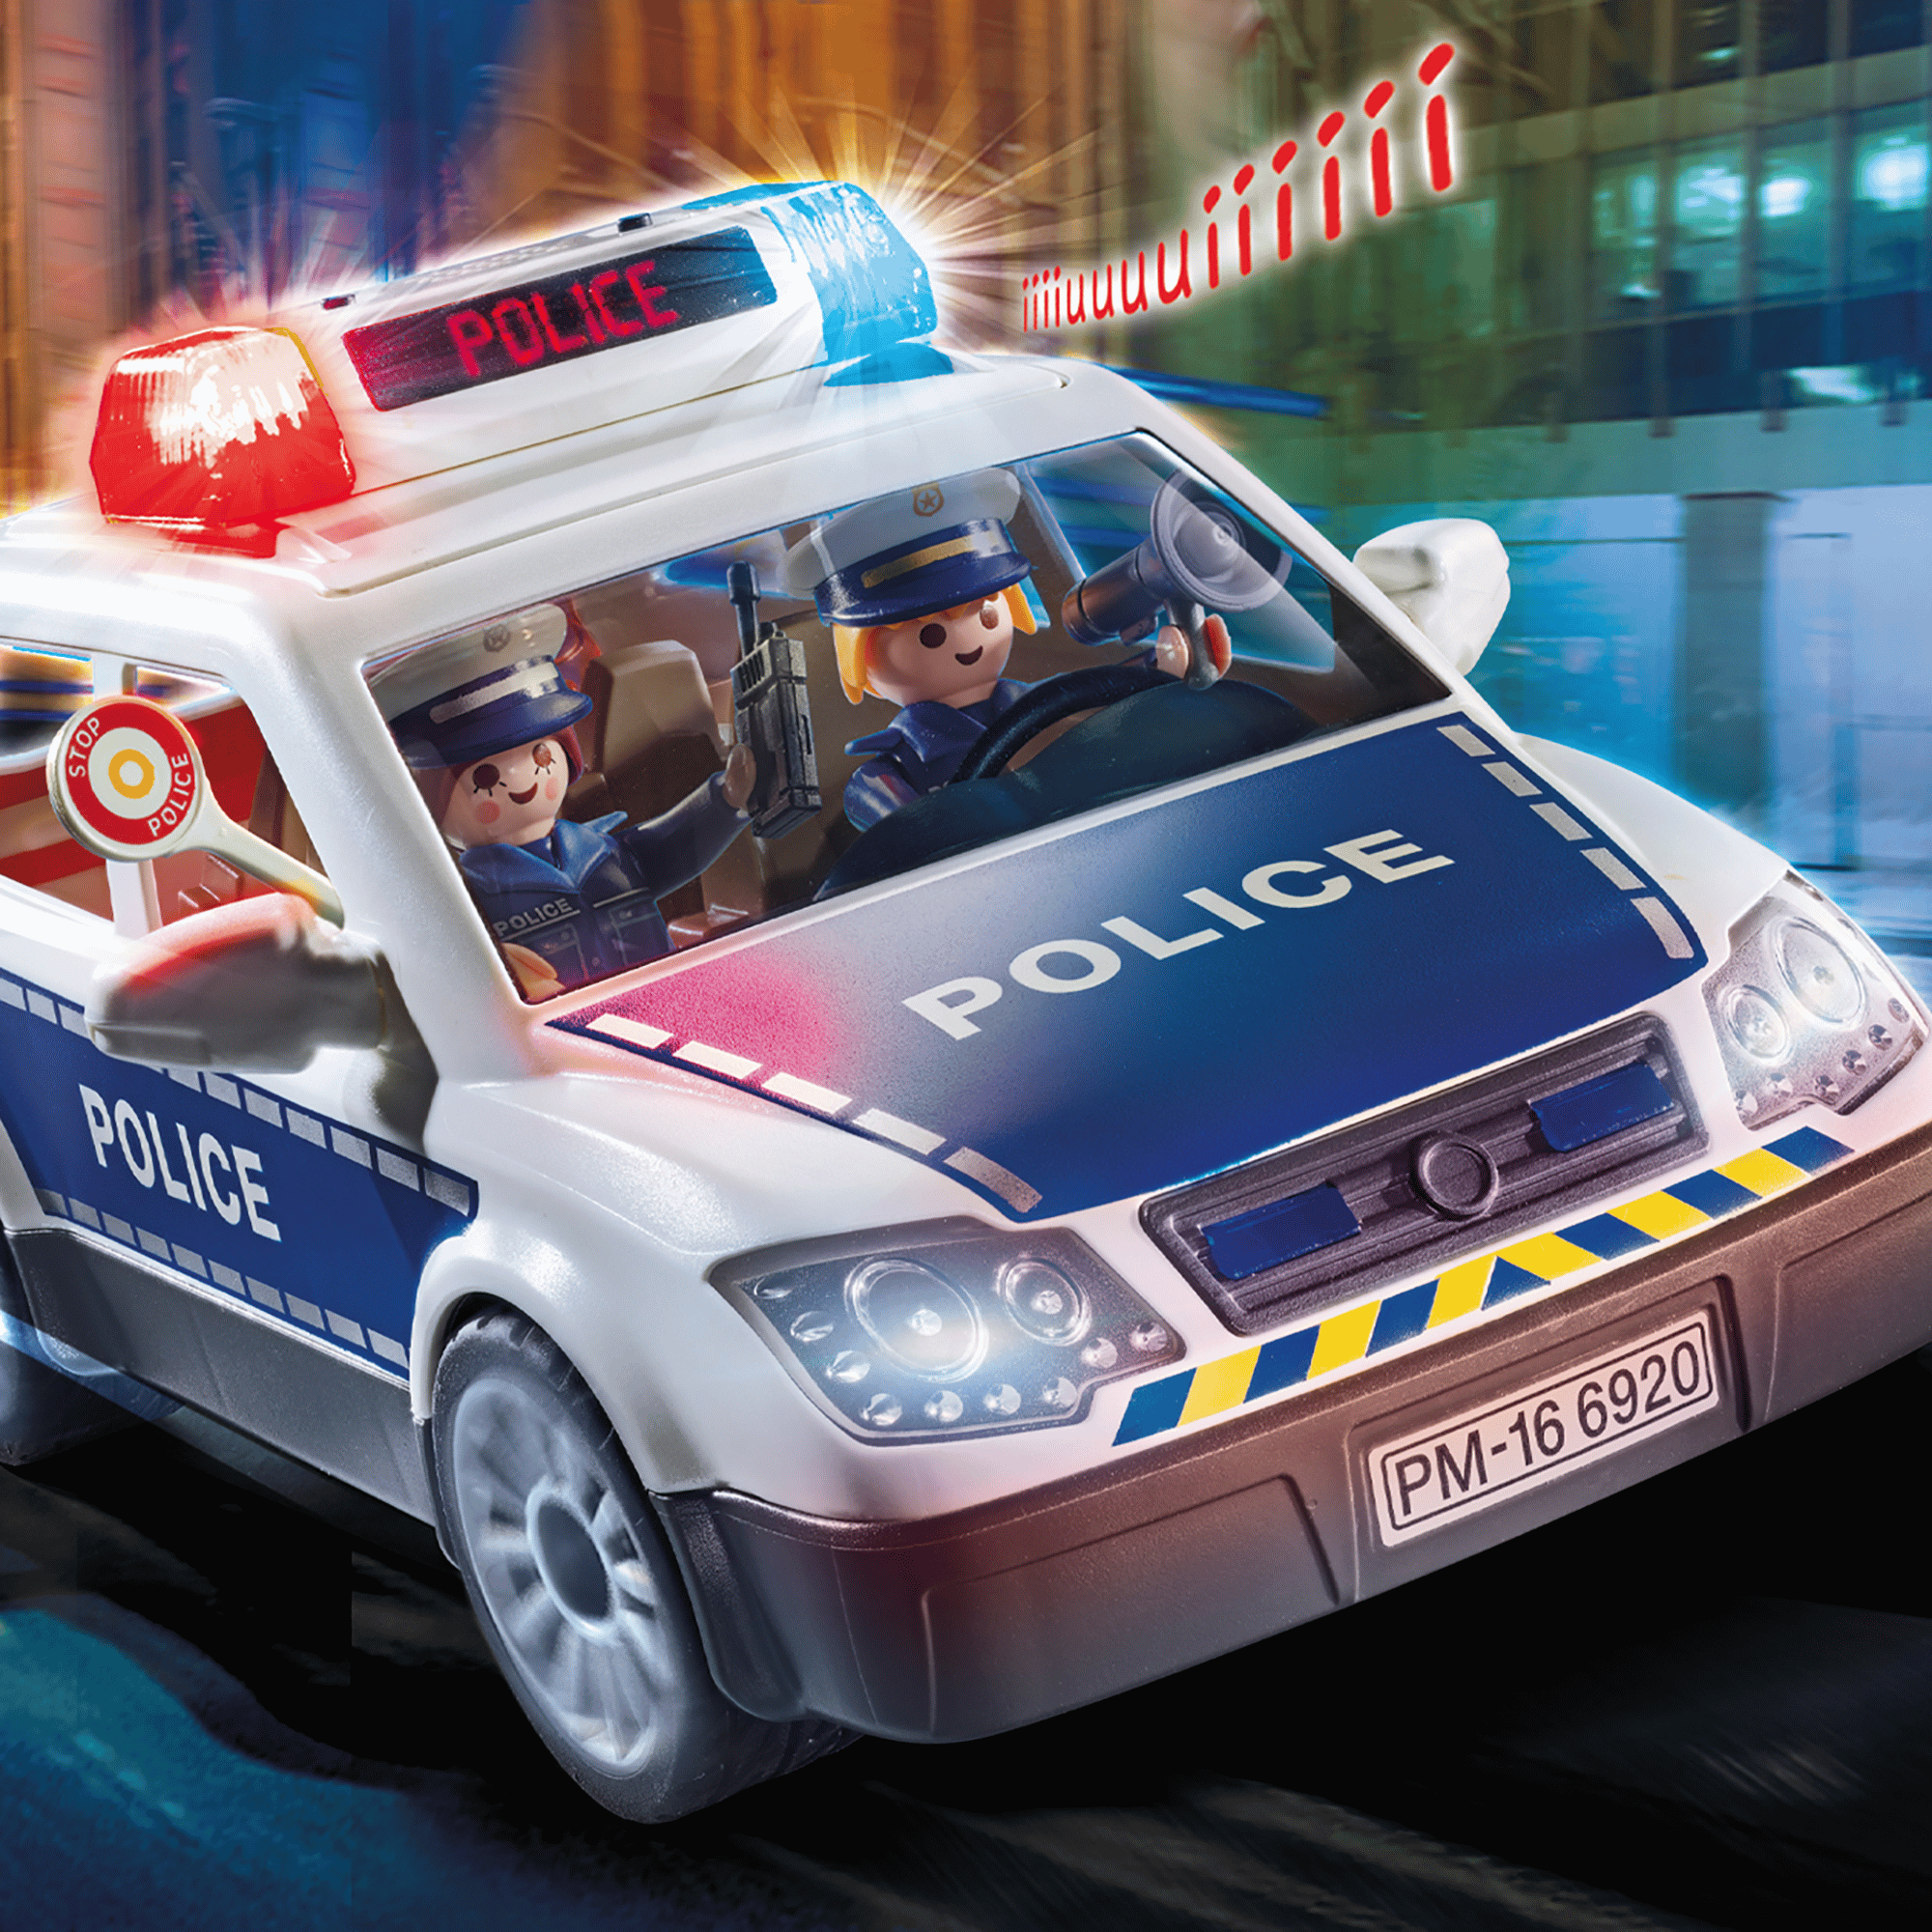 Polizei-Einsatzwagen playmobil 2000571476981 1